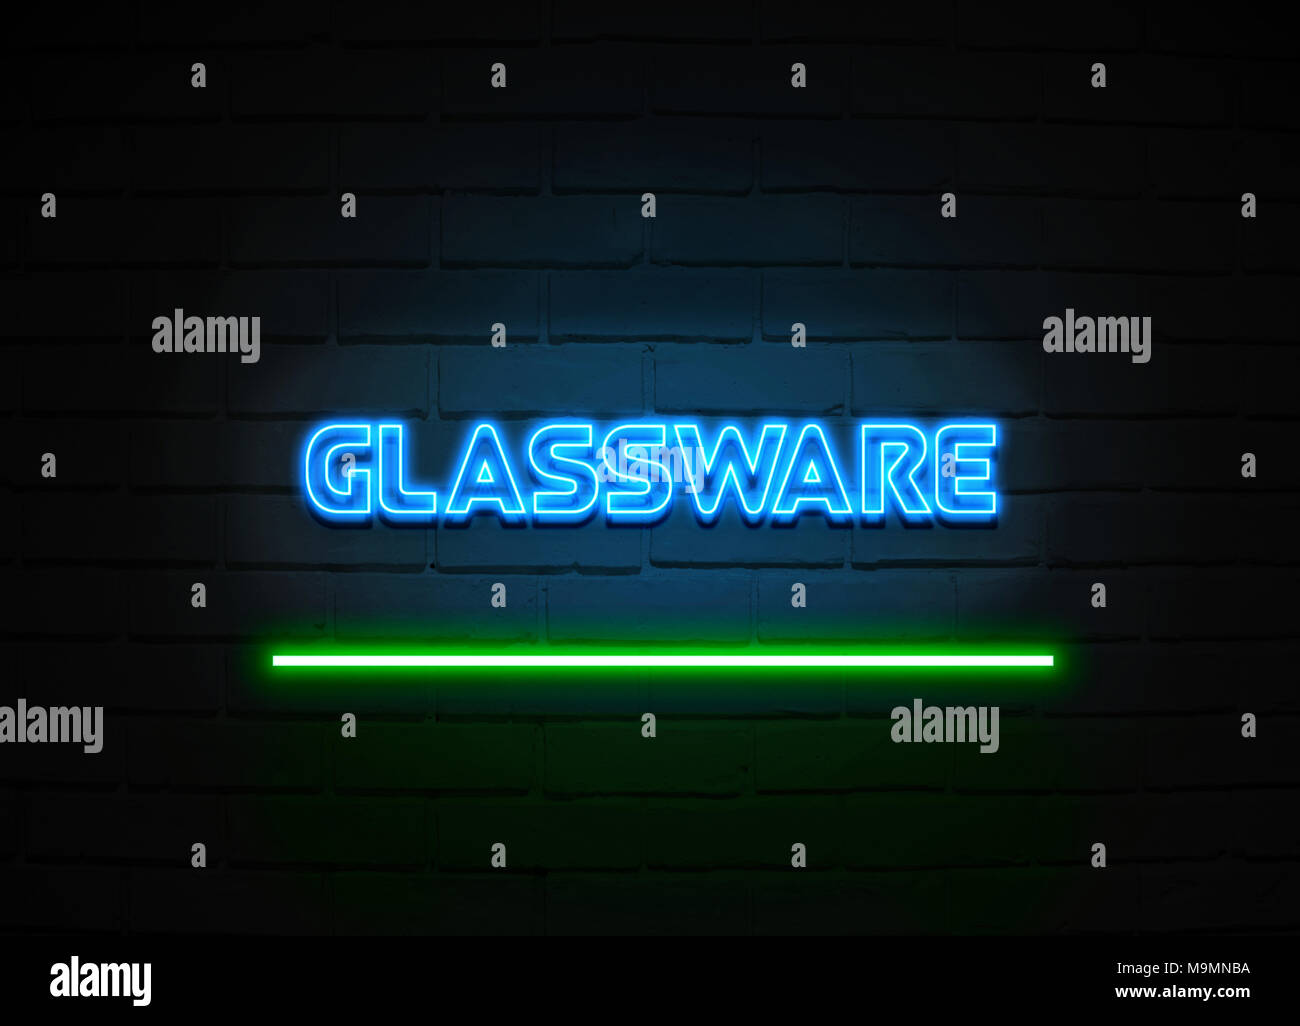 Glaswaren Leuchtreklame - glühende Leuchtreklame auf brickwall Wand - 3D-Royalty Free Stock Illustration dargestellt. Stockfoto